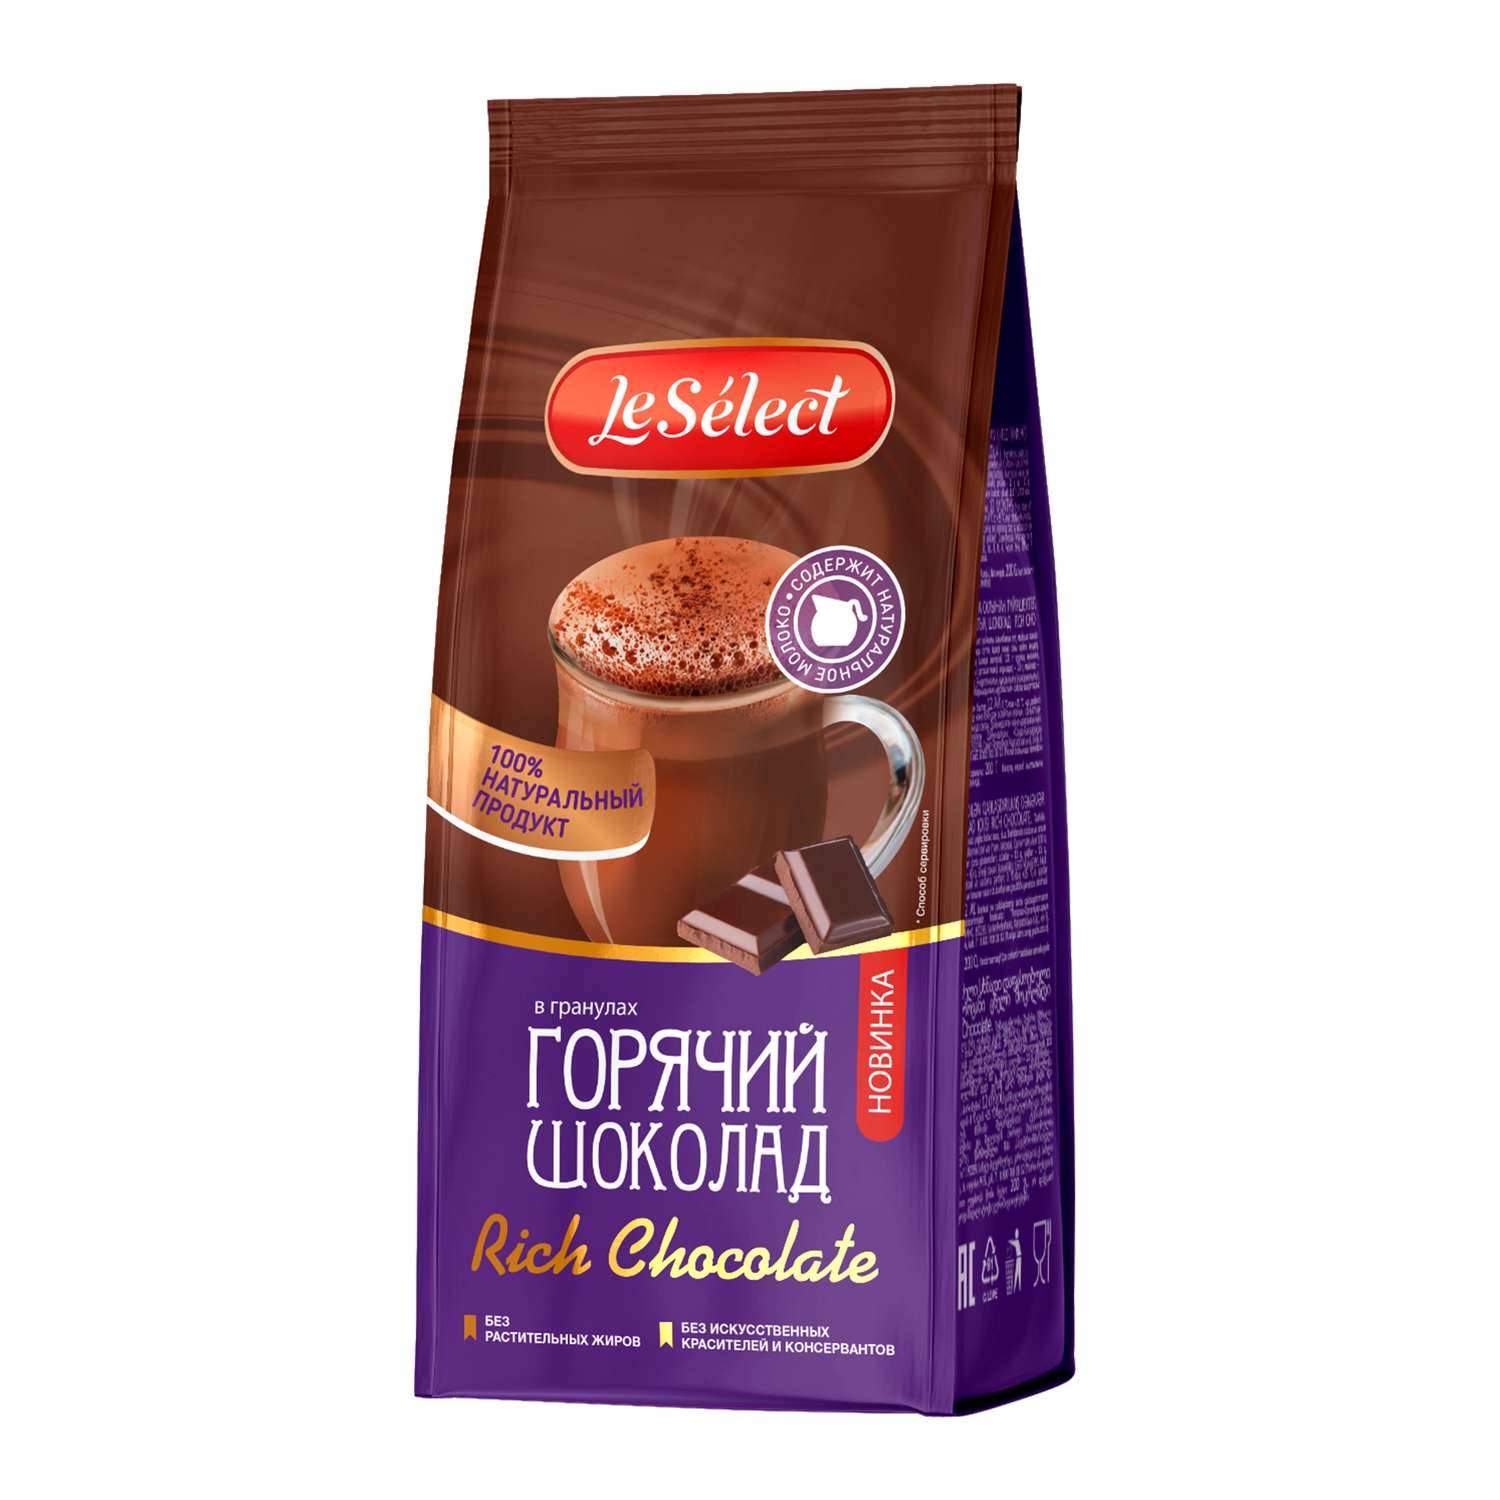 Горячий шоколад LeSelect Rich Chocolate на натуральном молоке гранулированный 200г - фото 1